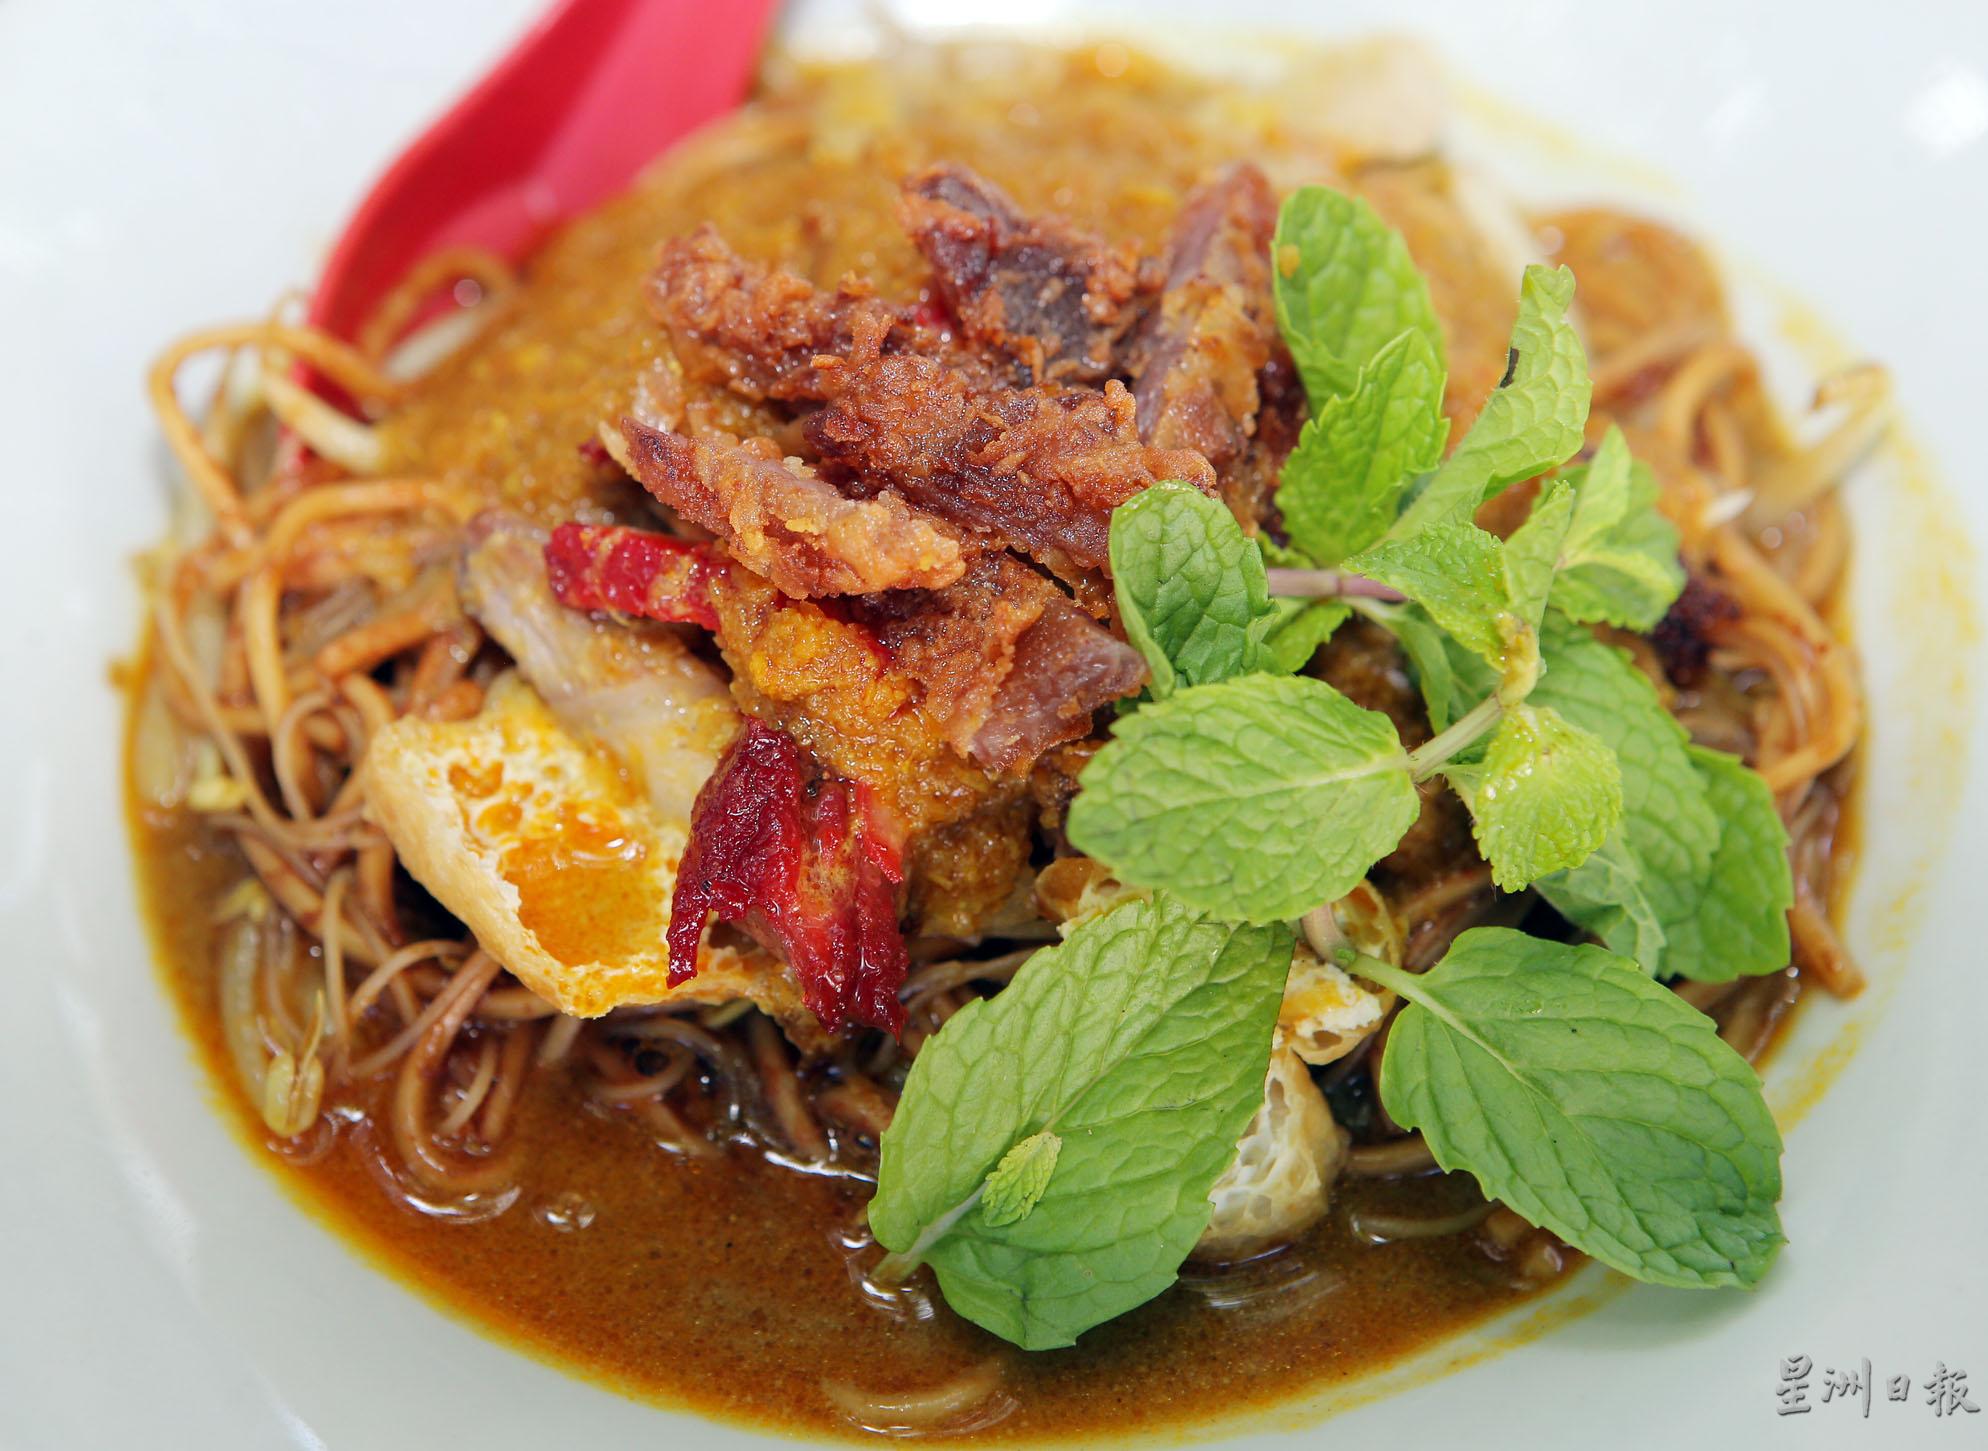 酸中带辣的惹味海南咖喱，是嗜吃重口味者的美食口袋名单之一。图为干咖喱的口味。